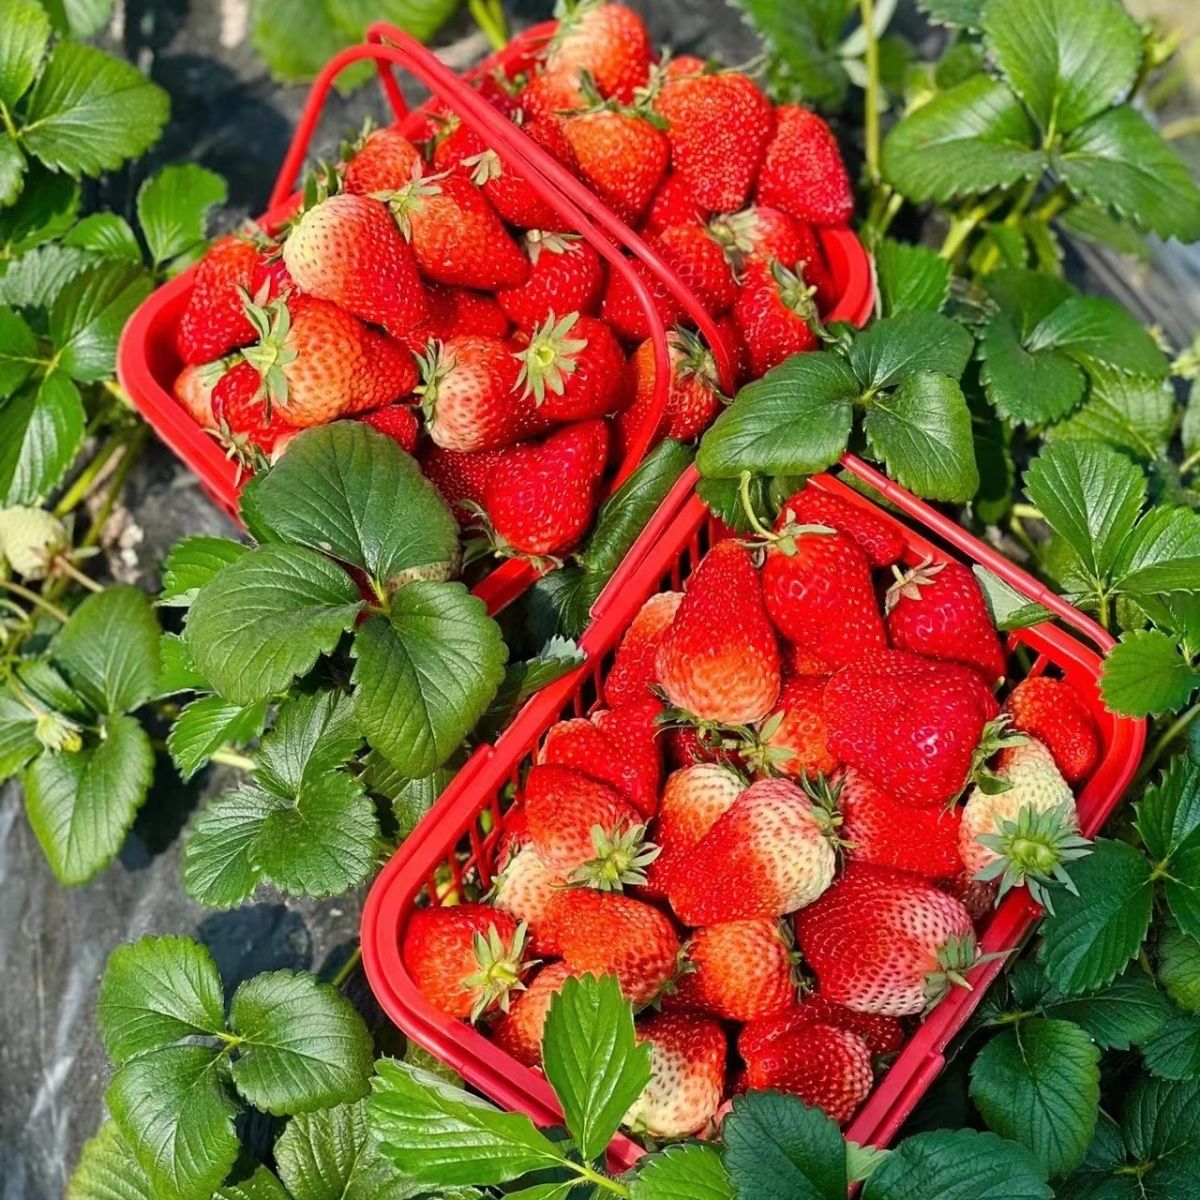 云南双流商用红颜草莓烘焙蛋糕糖葫芦果茶专用草莓新鲜包邮到家整箱